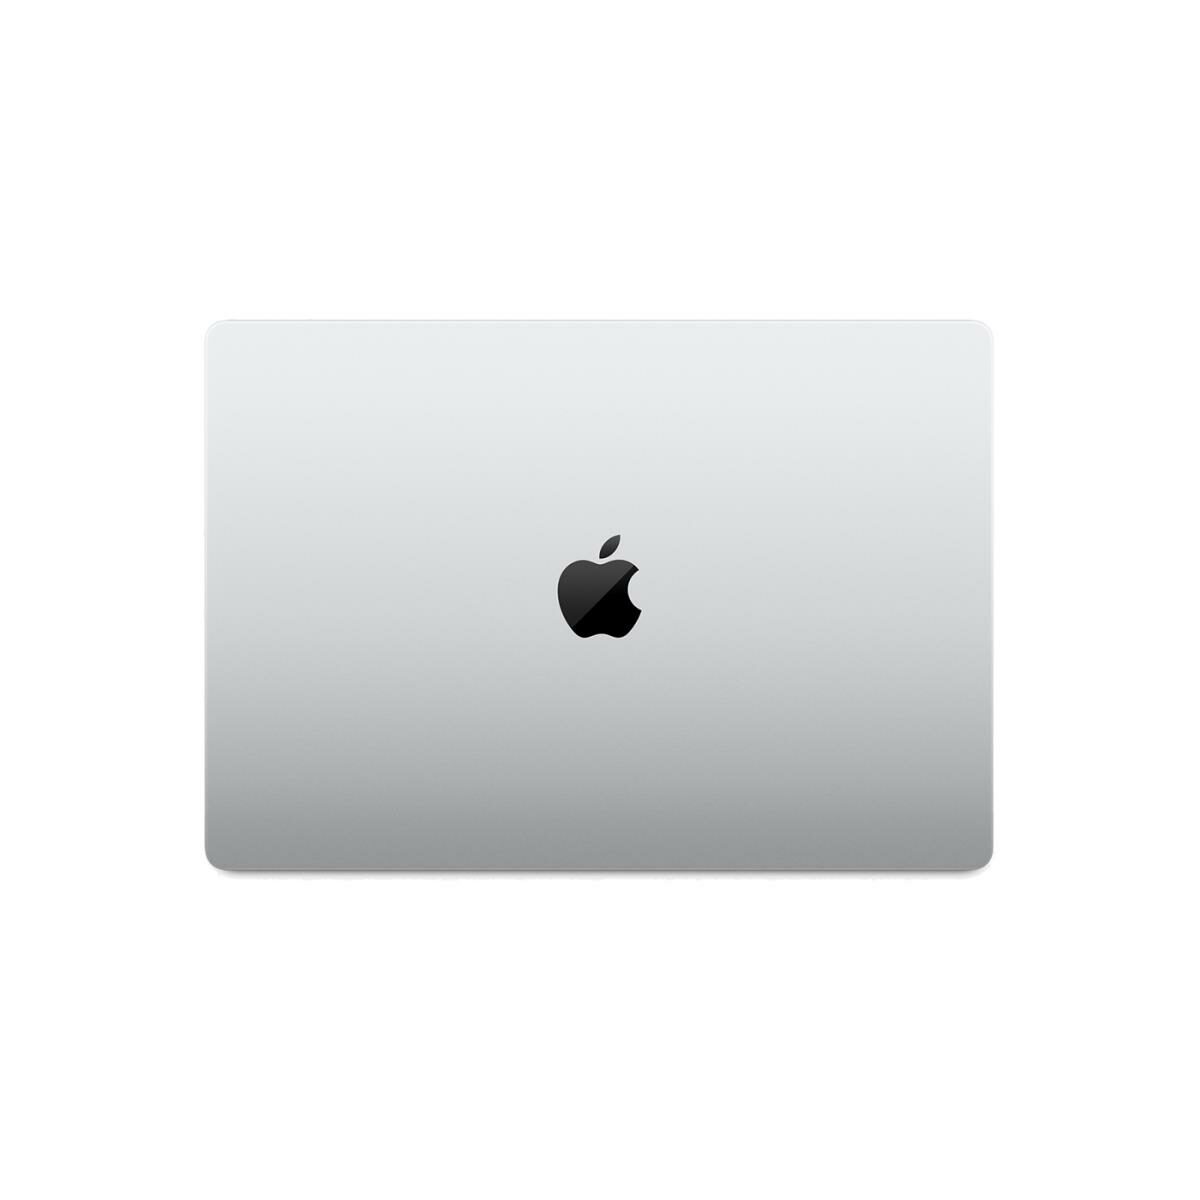 Apple 16-inch MacBook Pro: Apple M1 Max chip, 10-core CPU, 32-core GPU